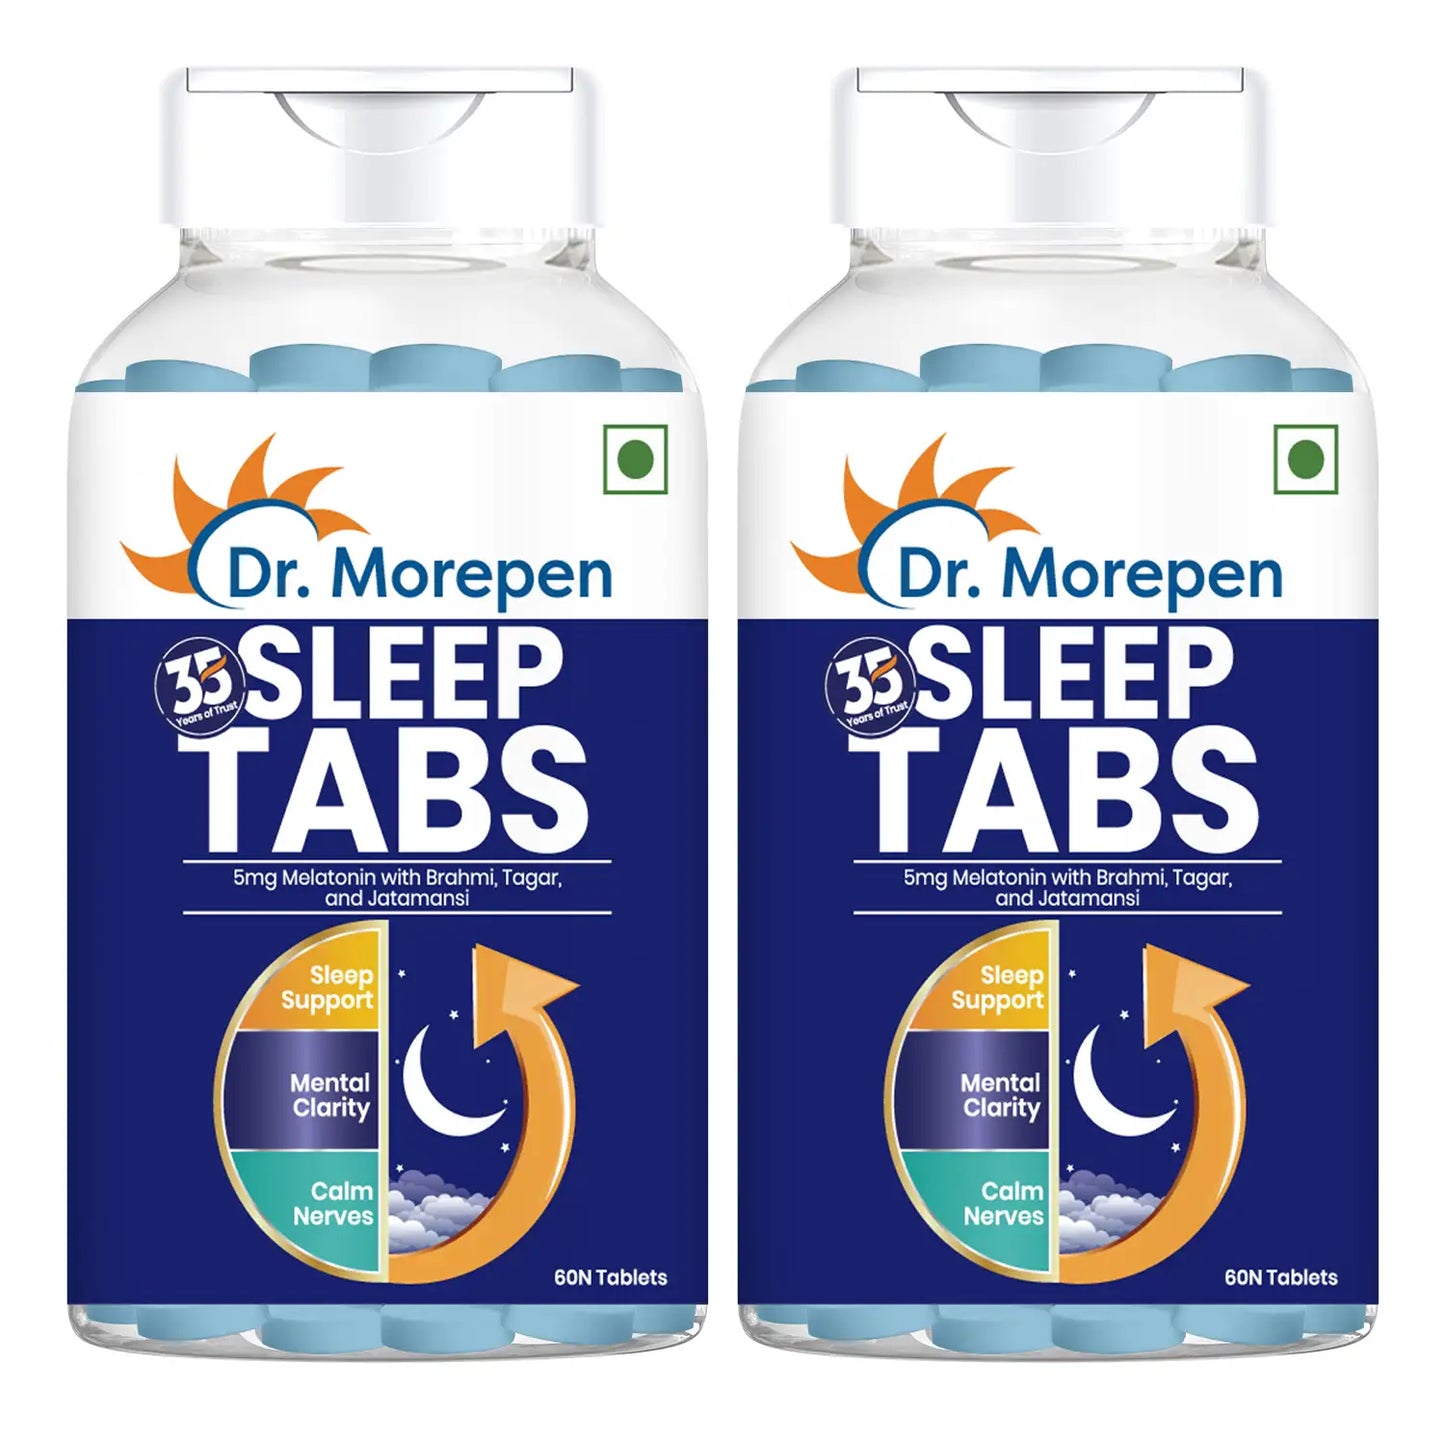 Sleep Tablets For Men & Women Pack of 2